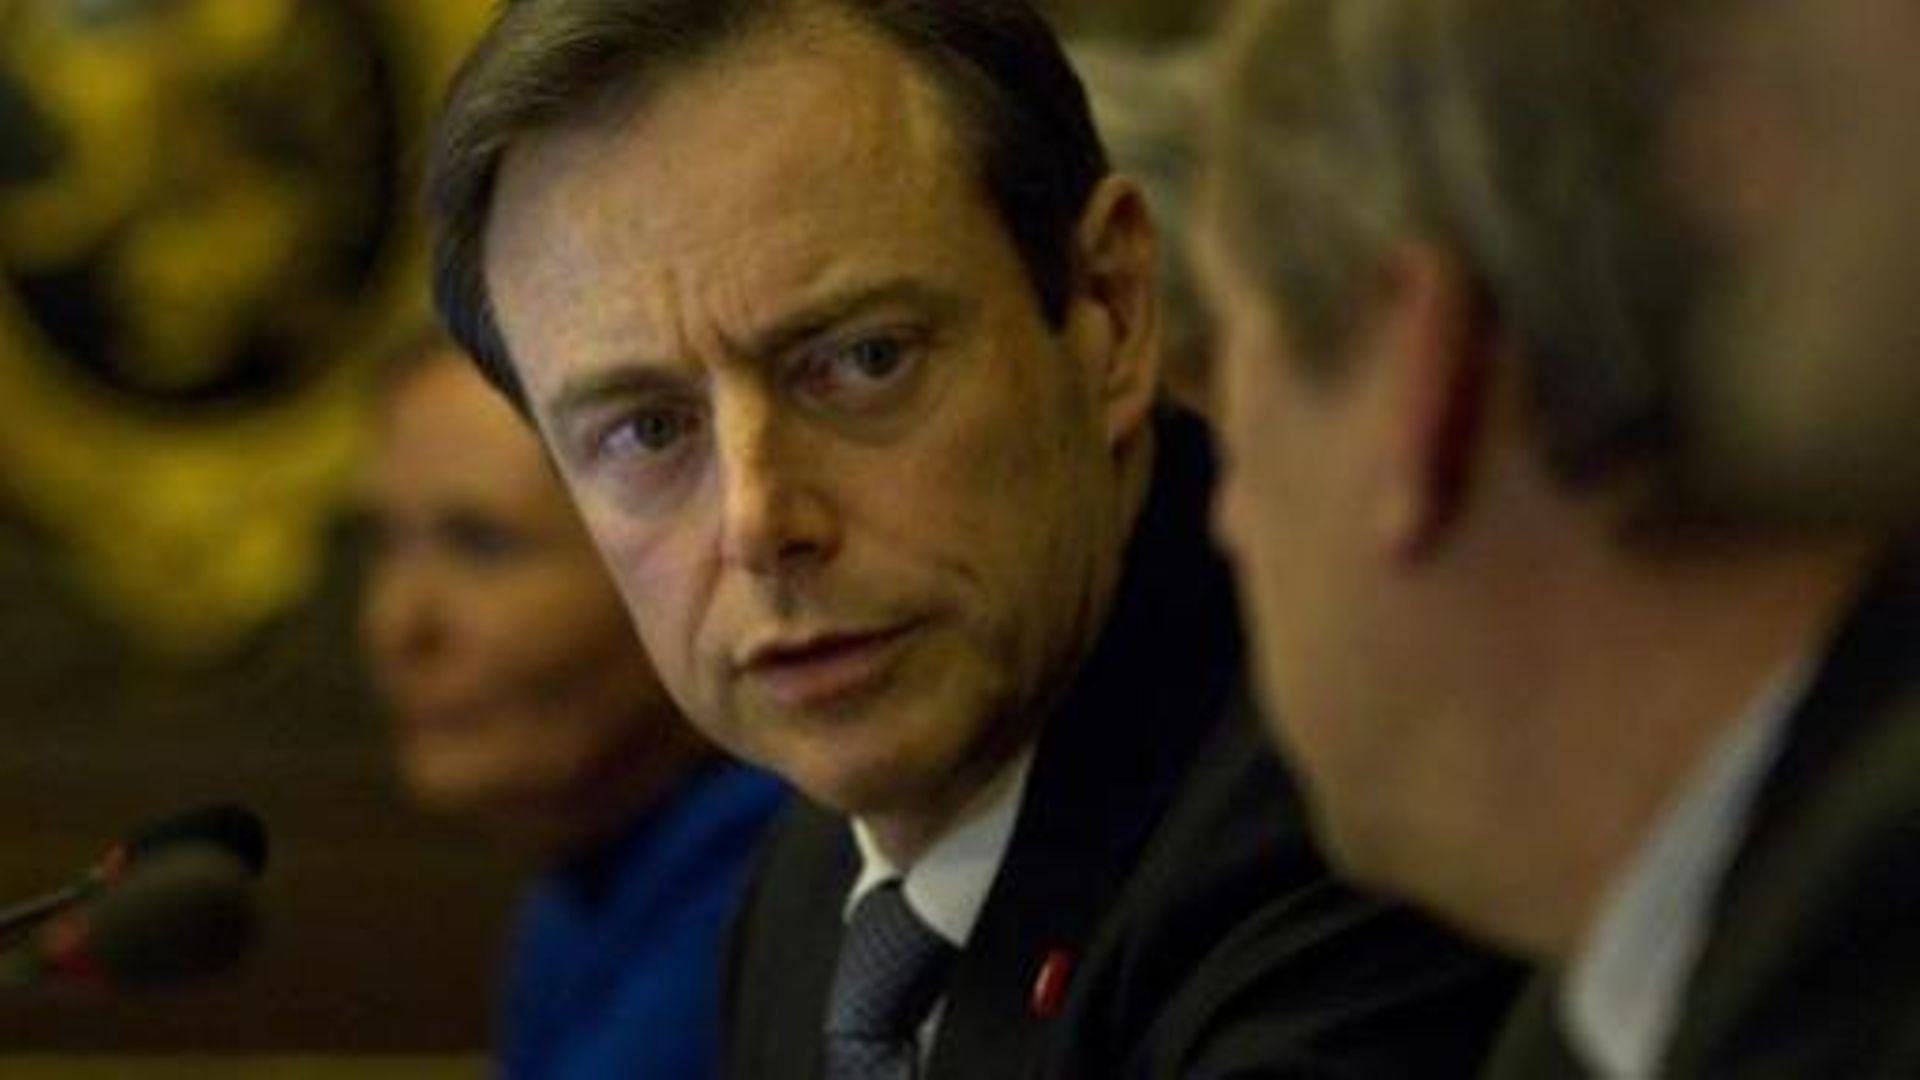 BArt de Wever à propos du gouvernement fédéral: "C'est un gouvernement de morts vivants"